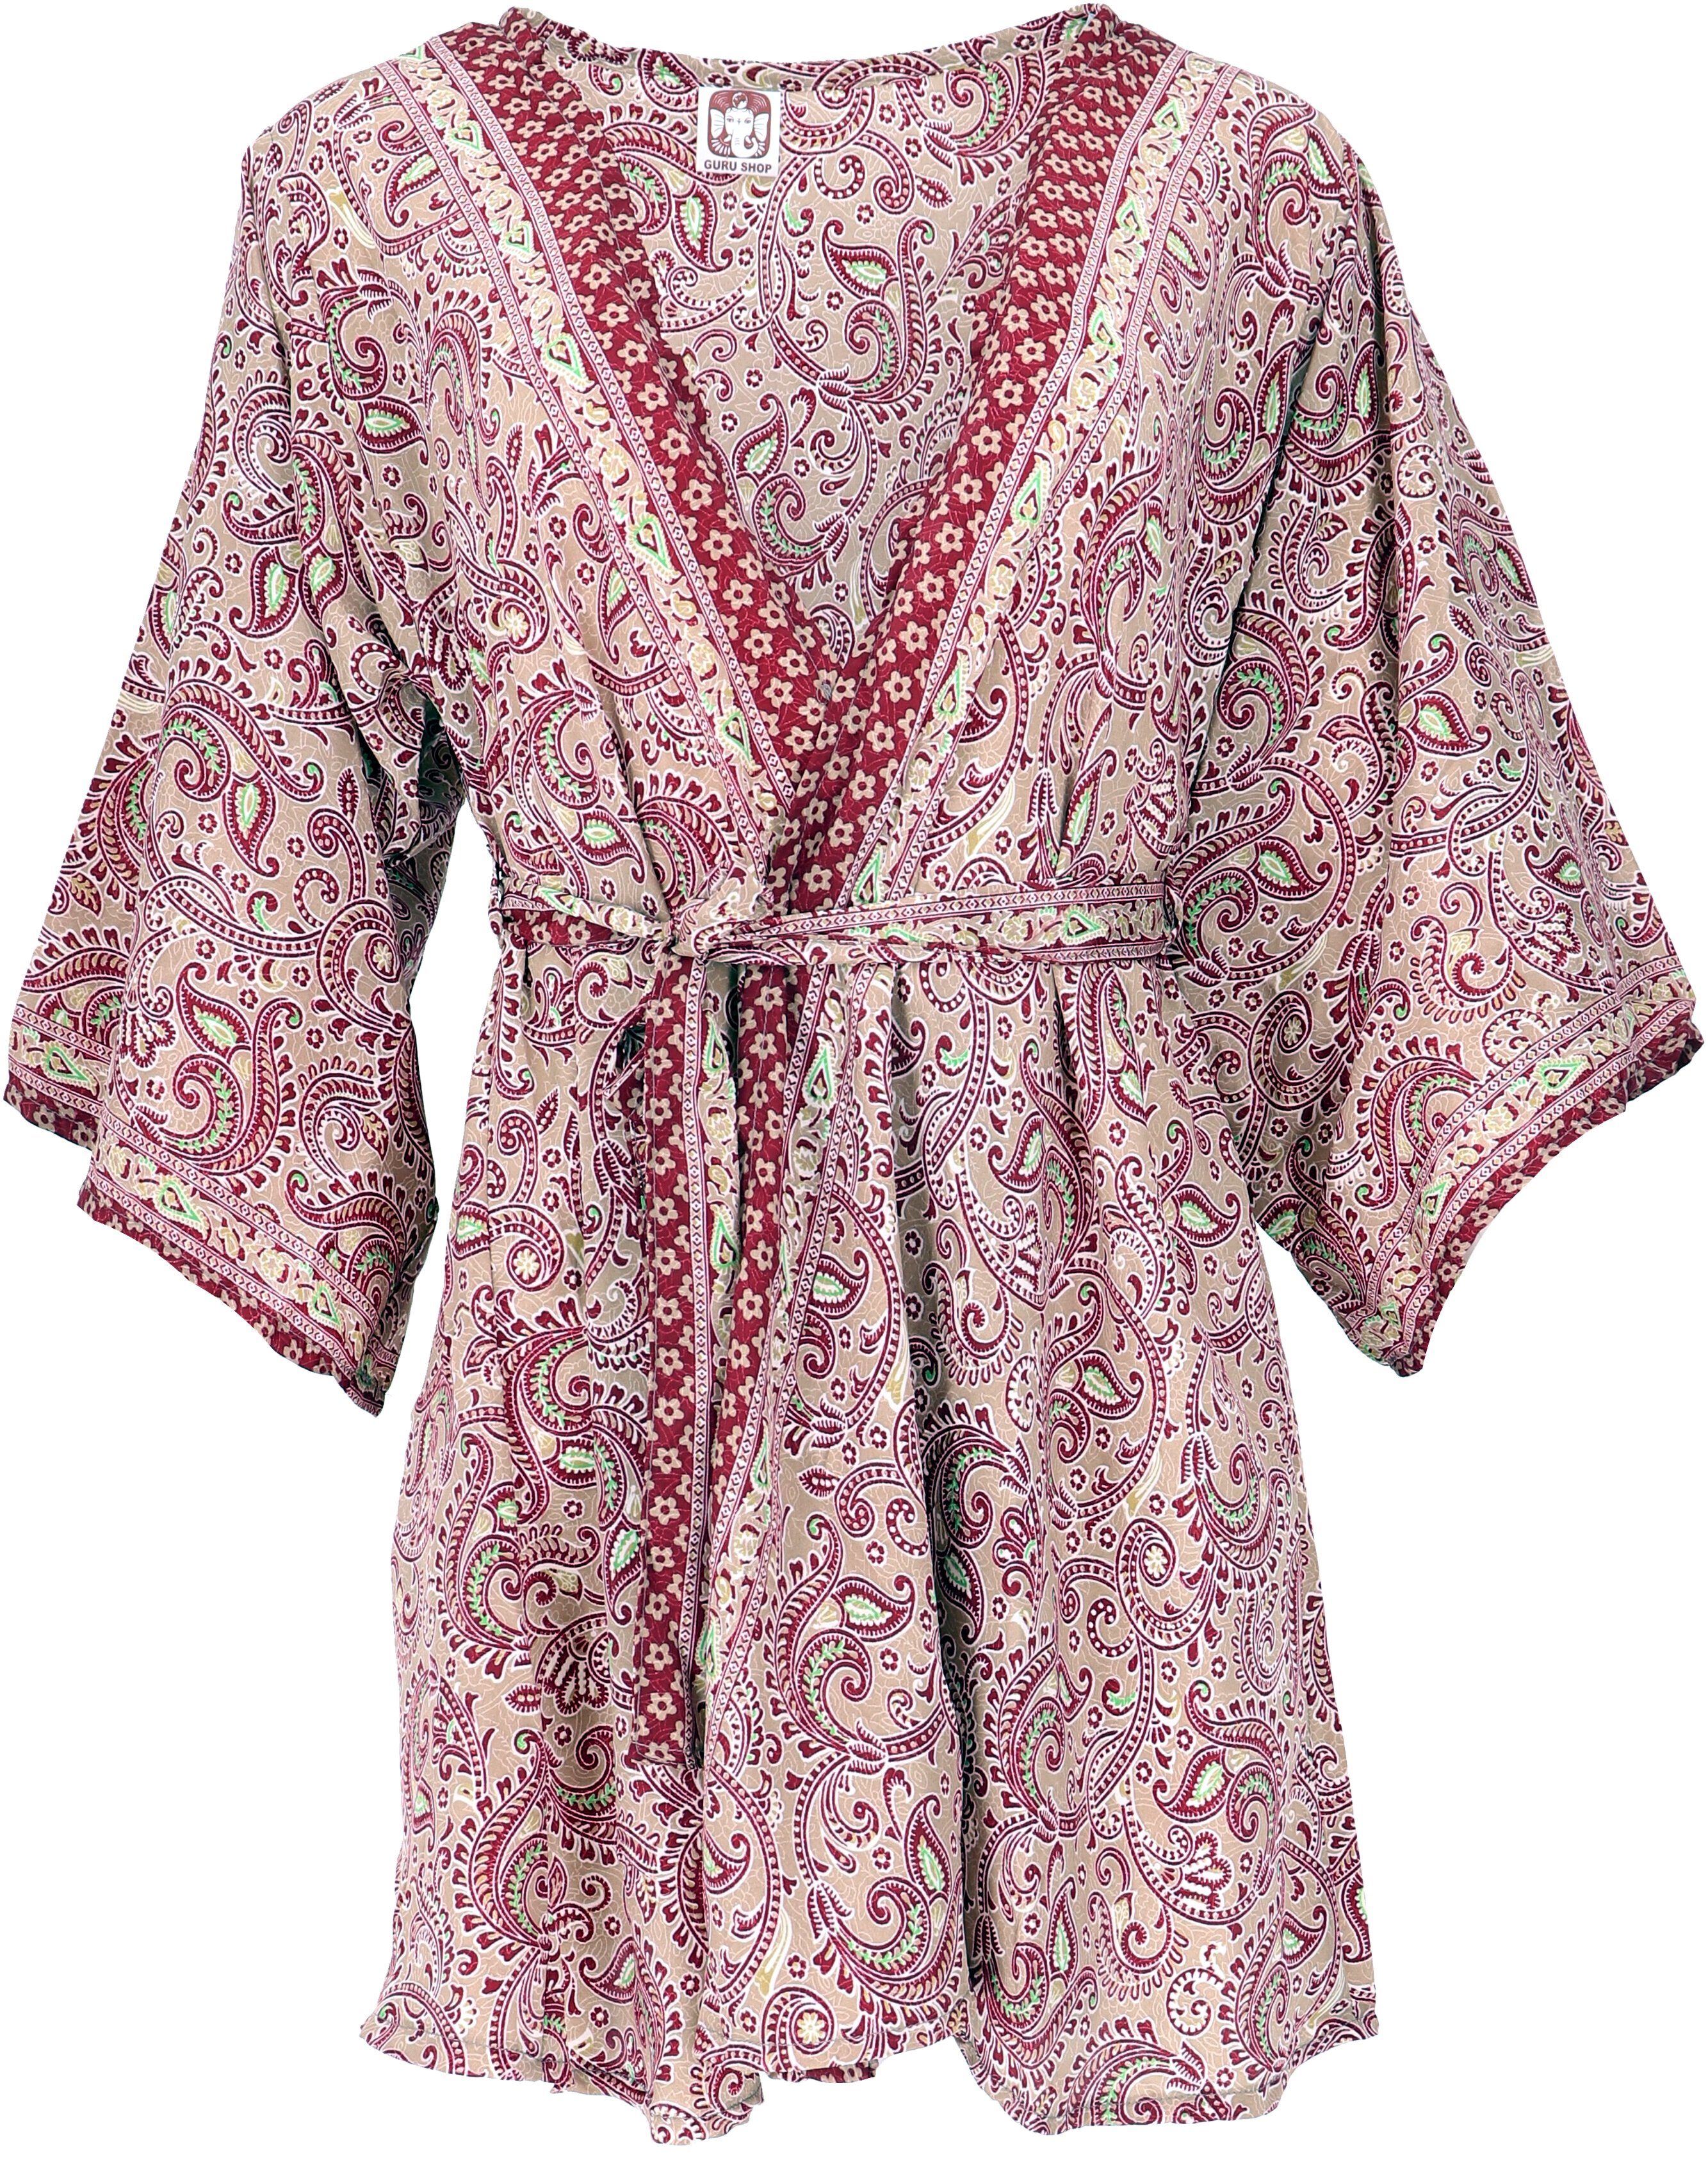 Guru-Shop Kimono alternative Kimonojäckchen, Kimono, Boho Bekleidung kurzer Kimonokleid.., beige/bordeaux